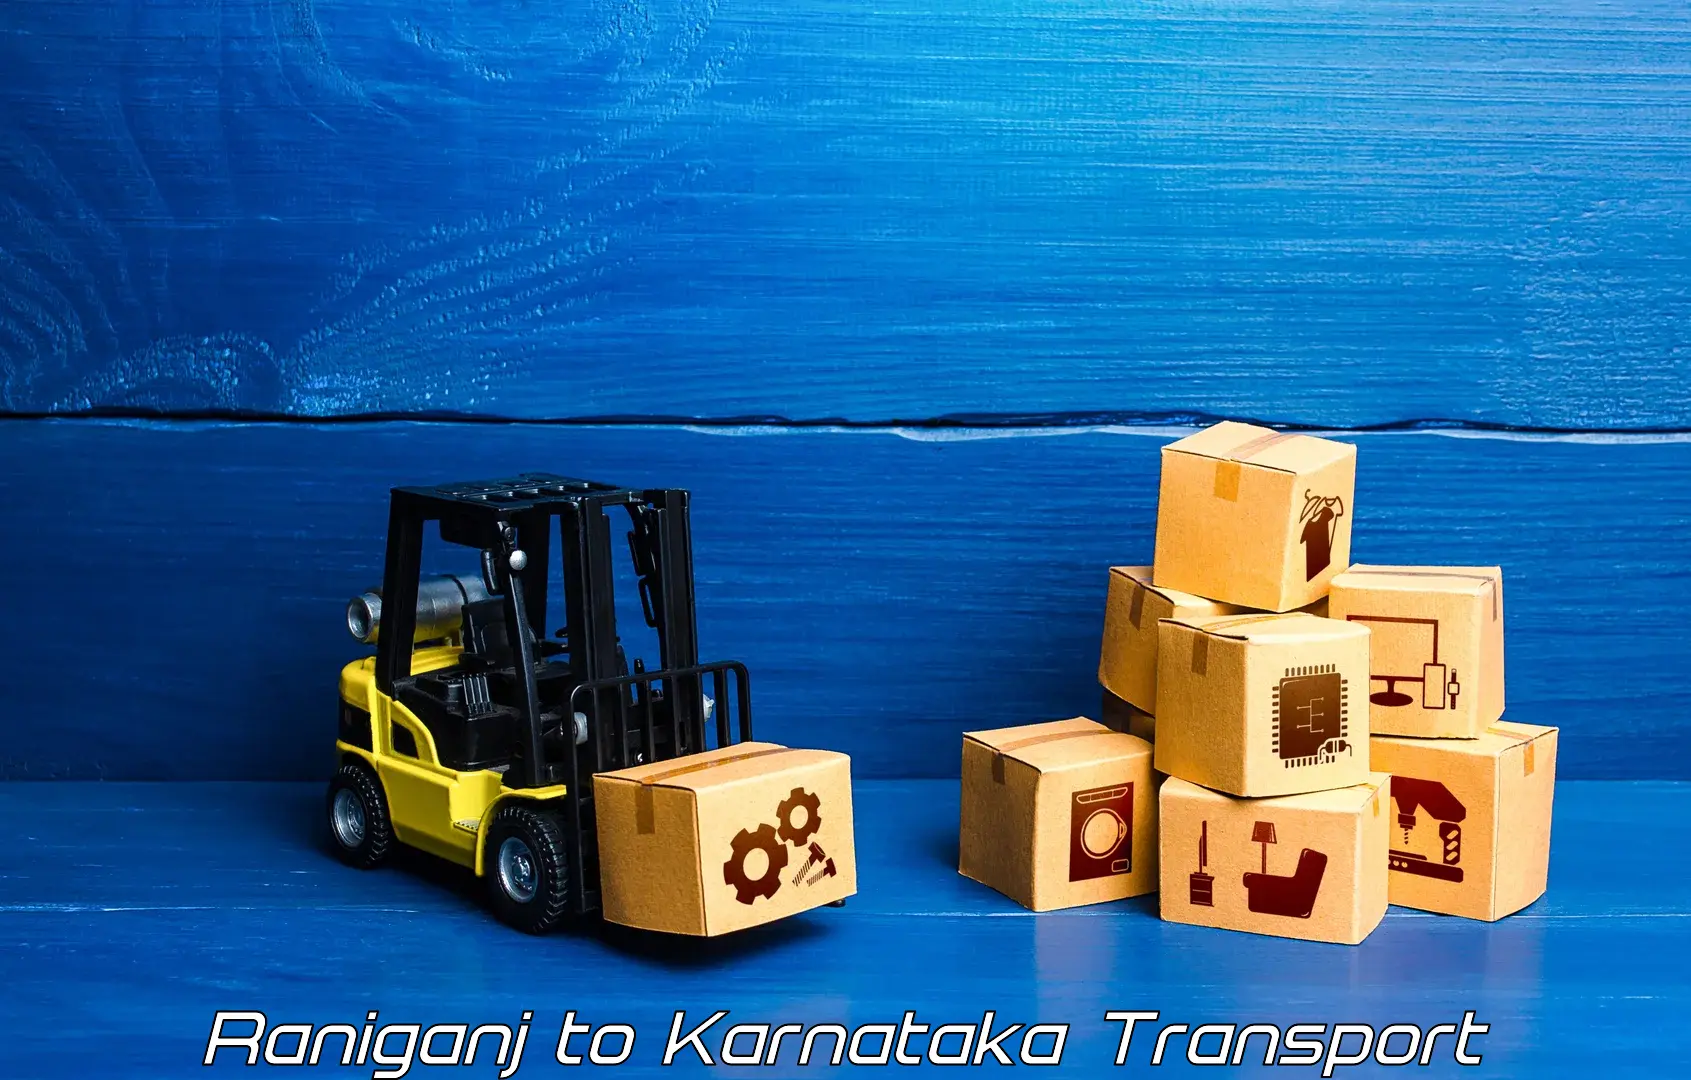 Shipping partner Raniganj to Hagaribommanahalli